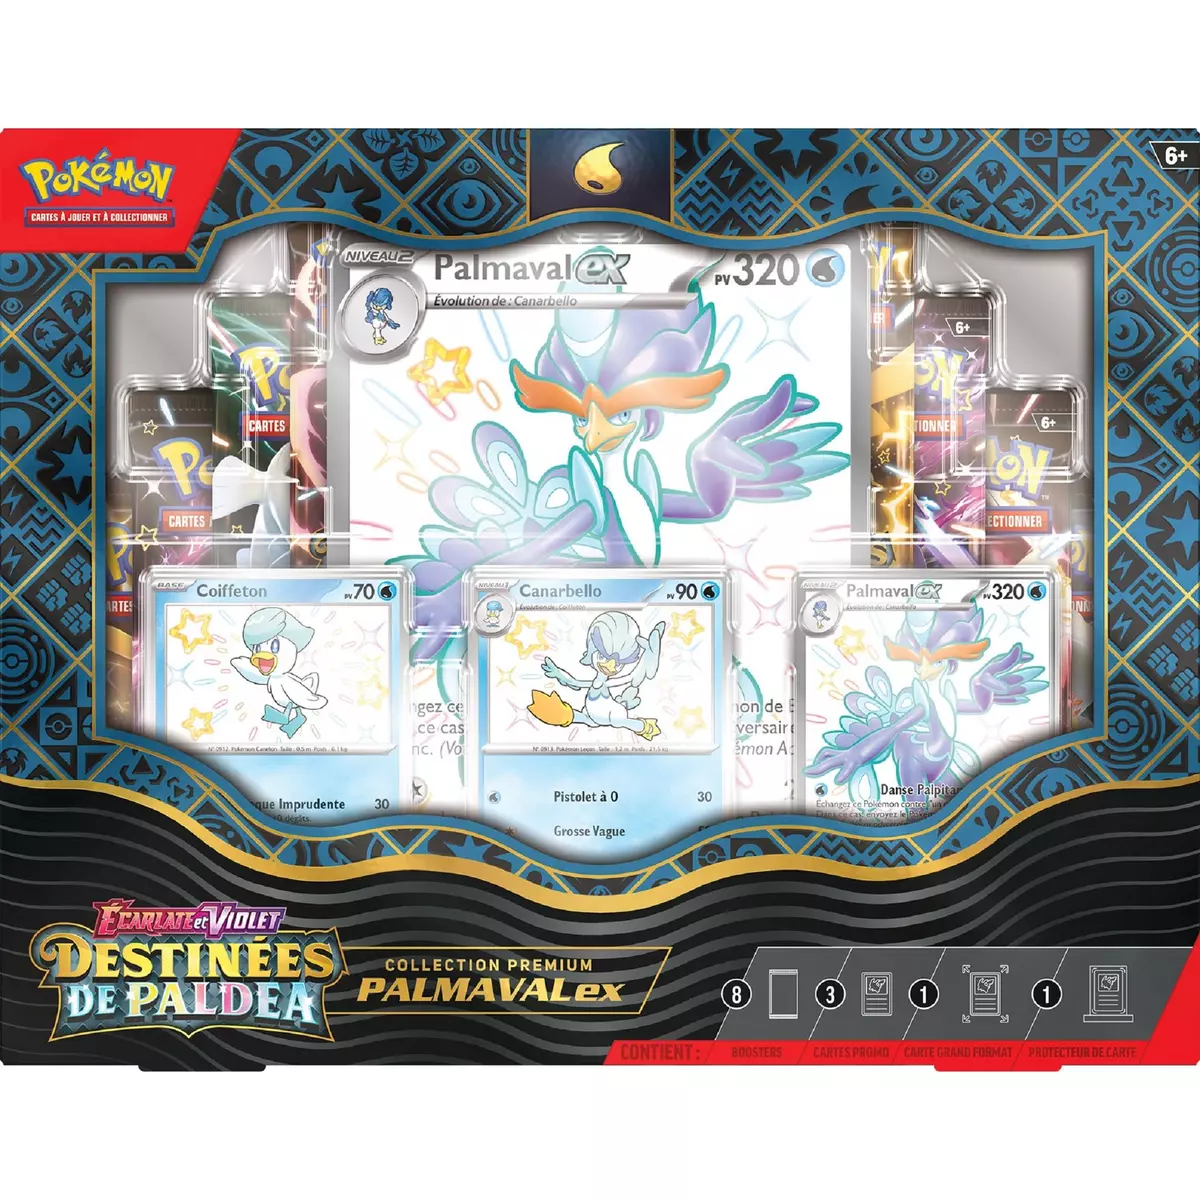 POKEMON Coffret Collection Premium Cartes Pokémon Palmaval EX Destinées de Paldea